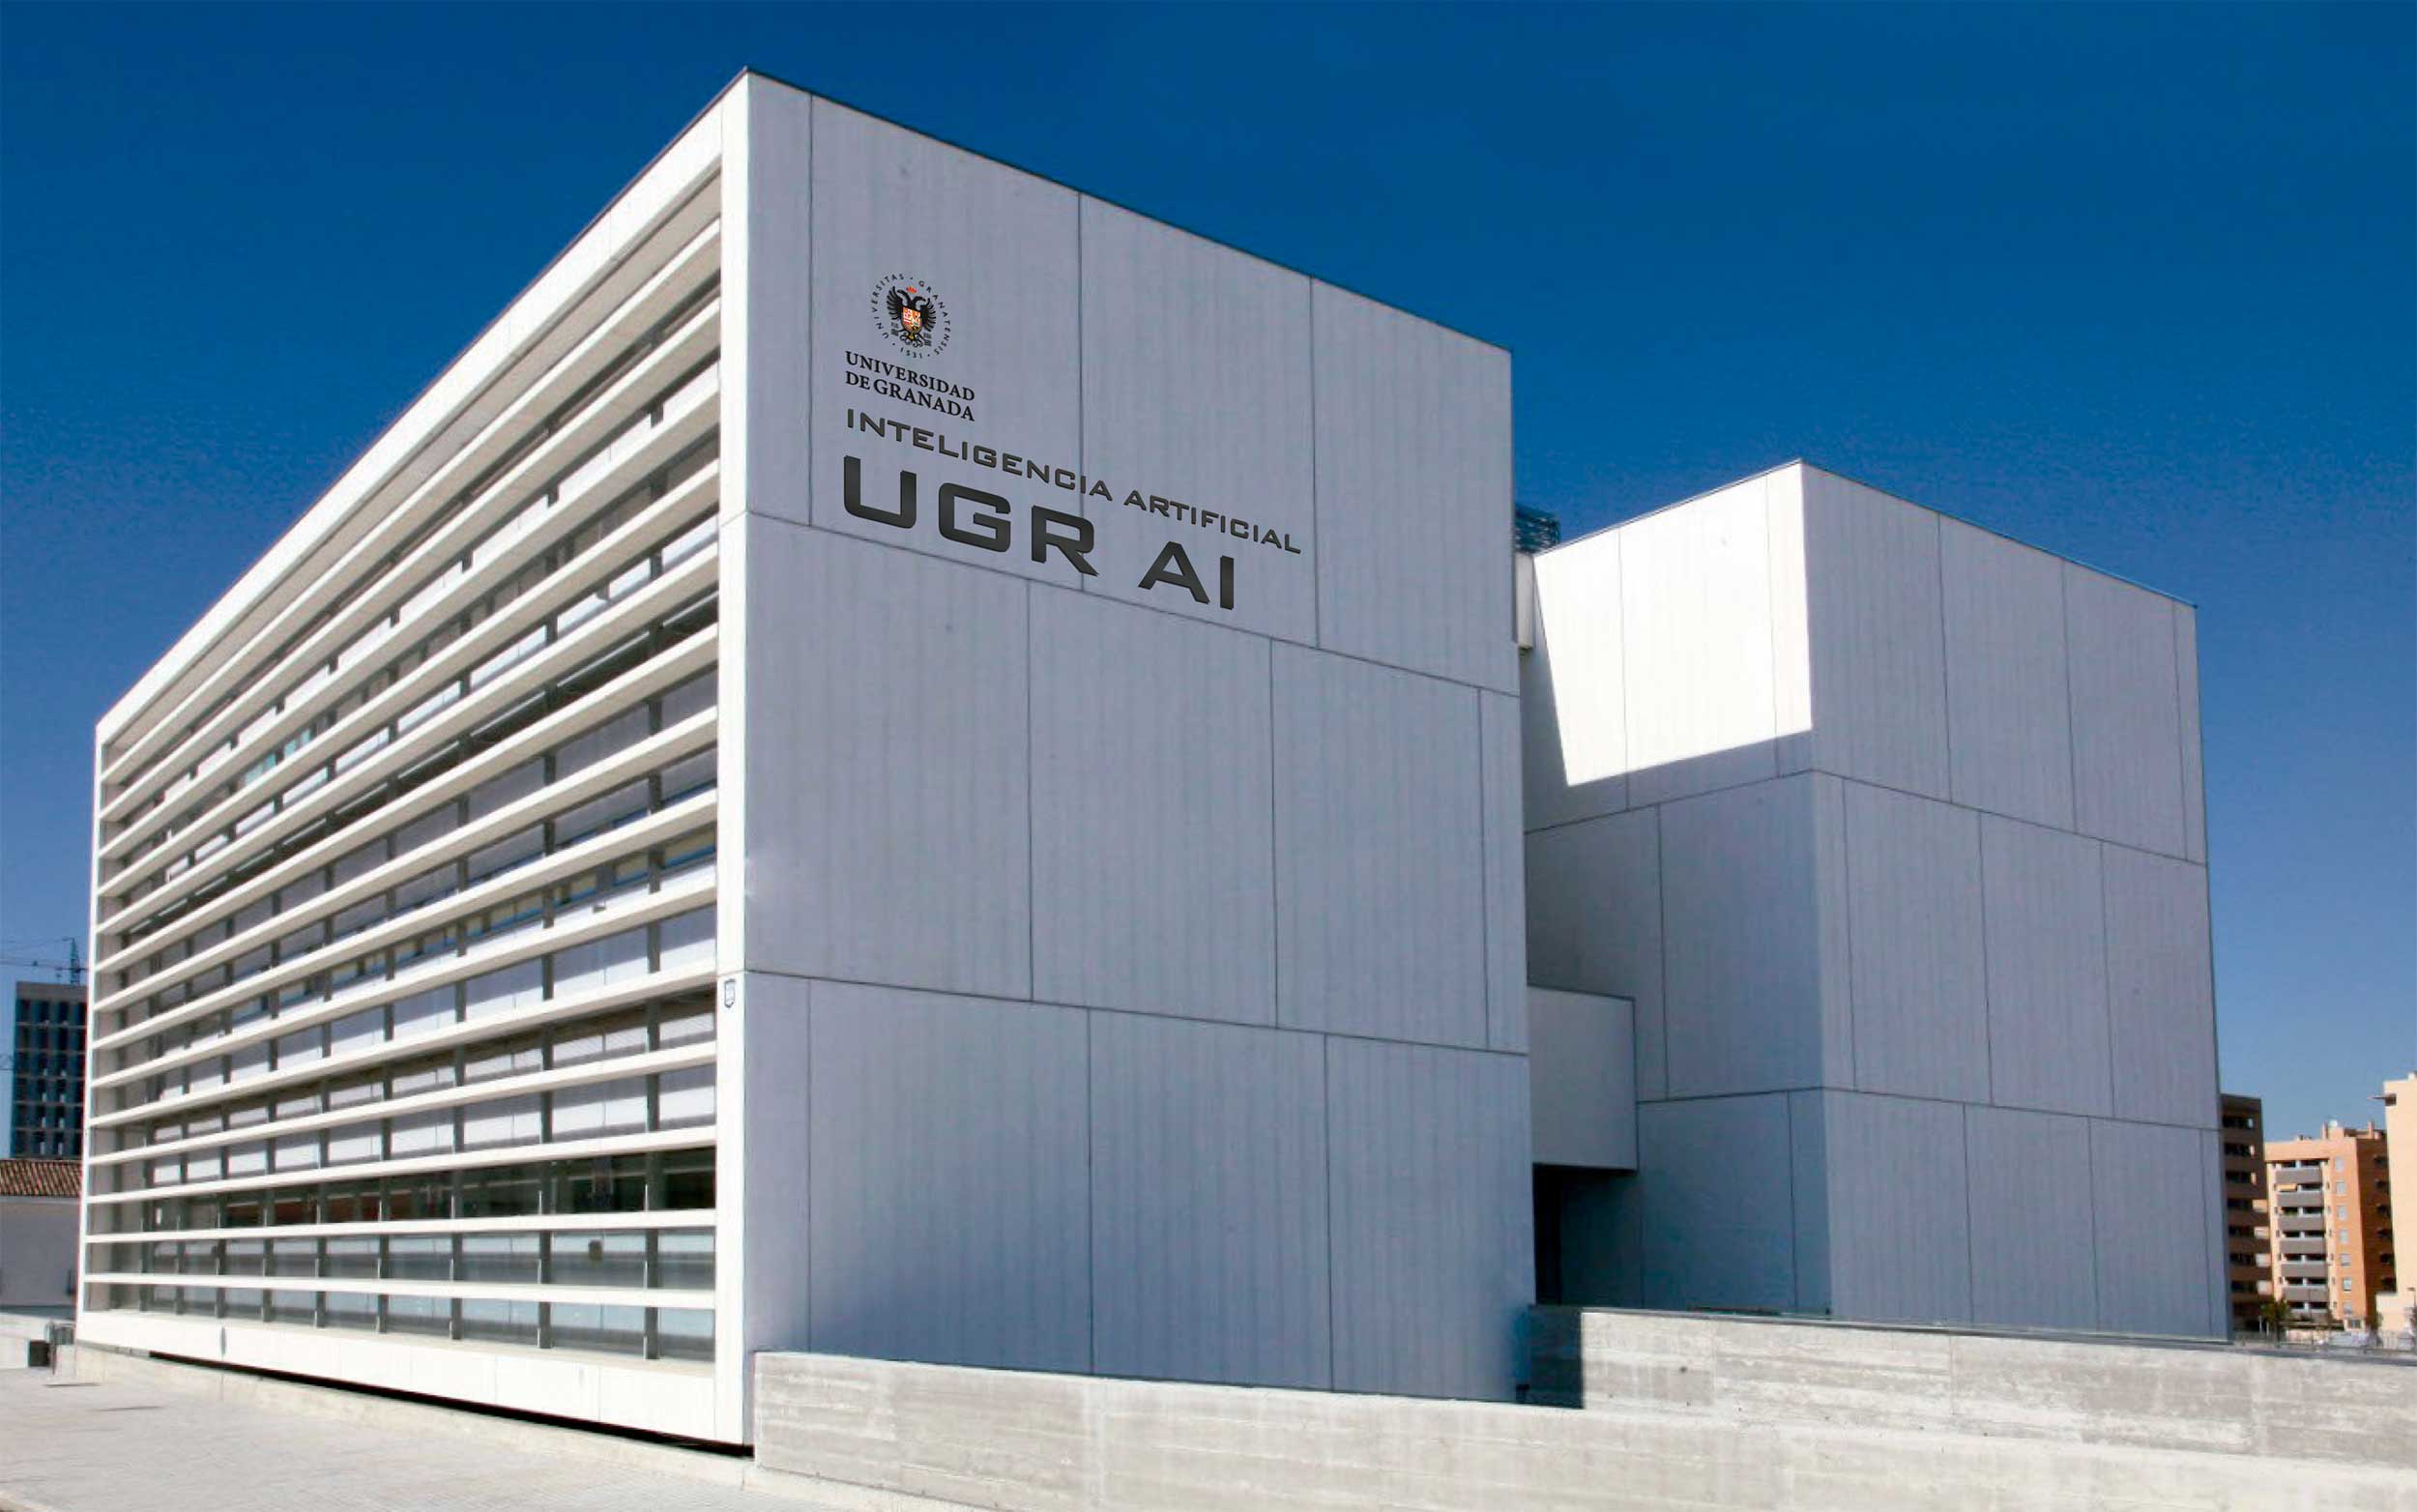 Edificio UGR AI